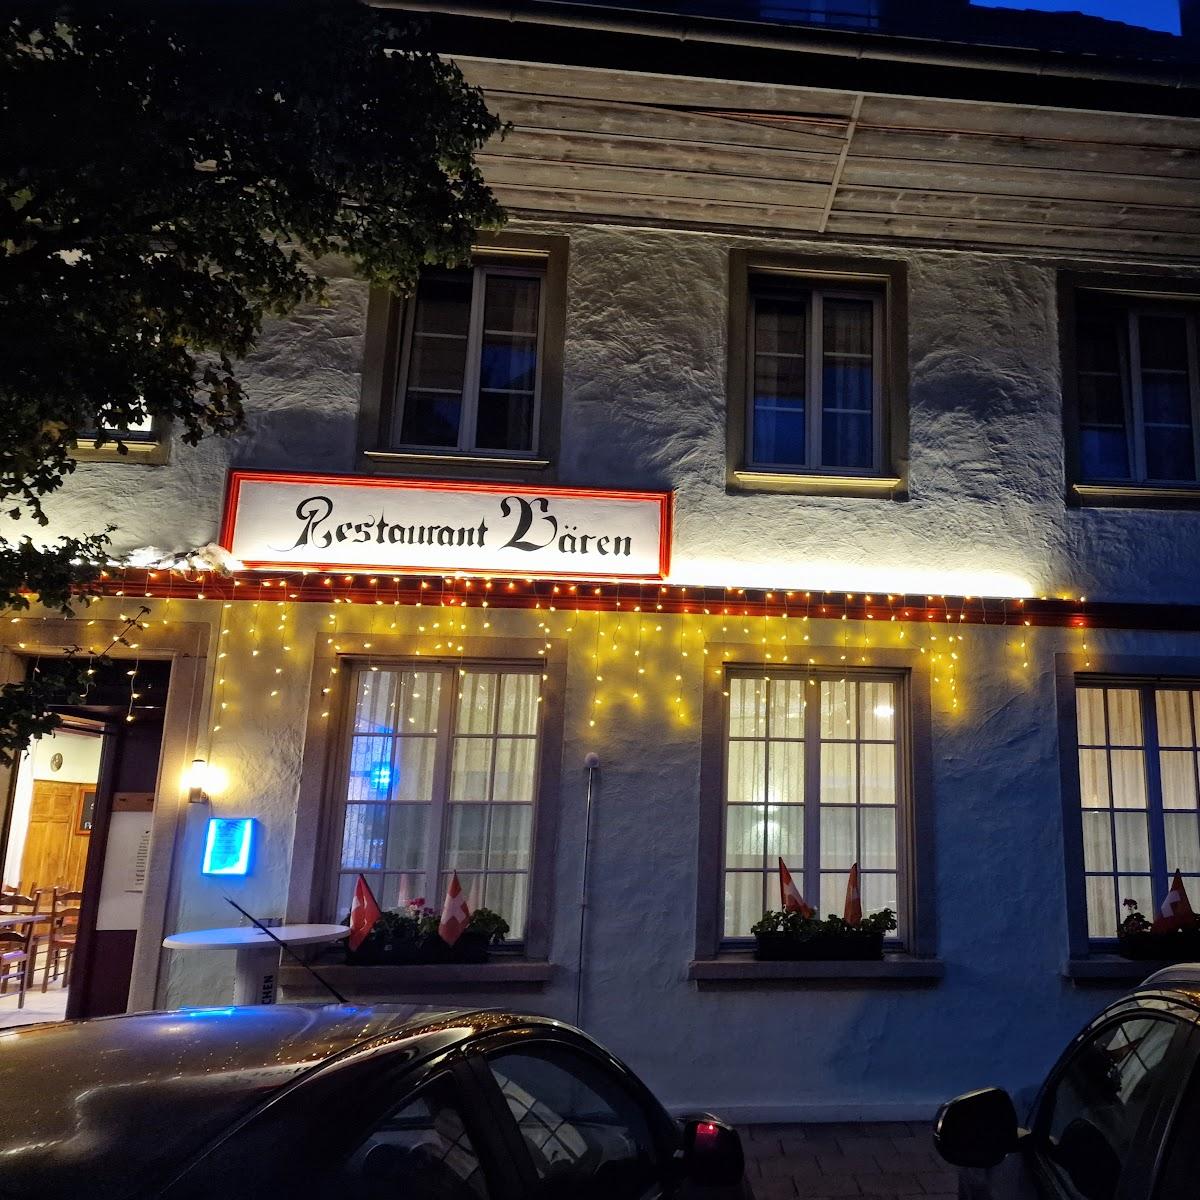 Restaurant "Bären  Gmbh" in Rohrbach